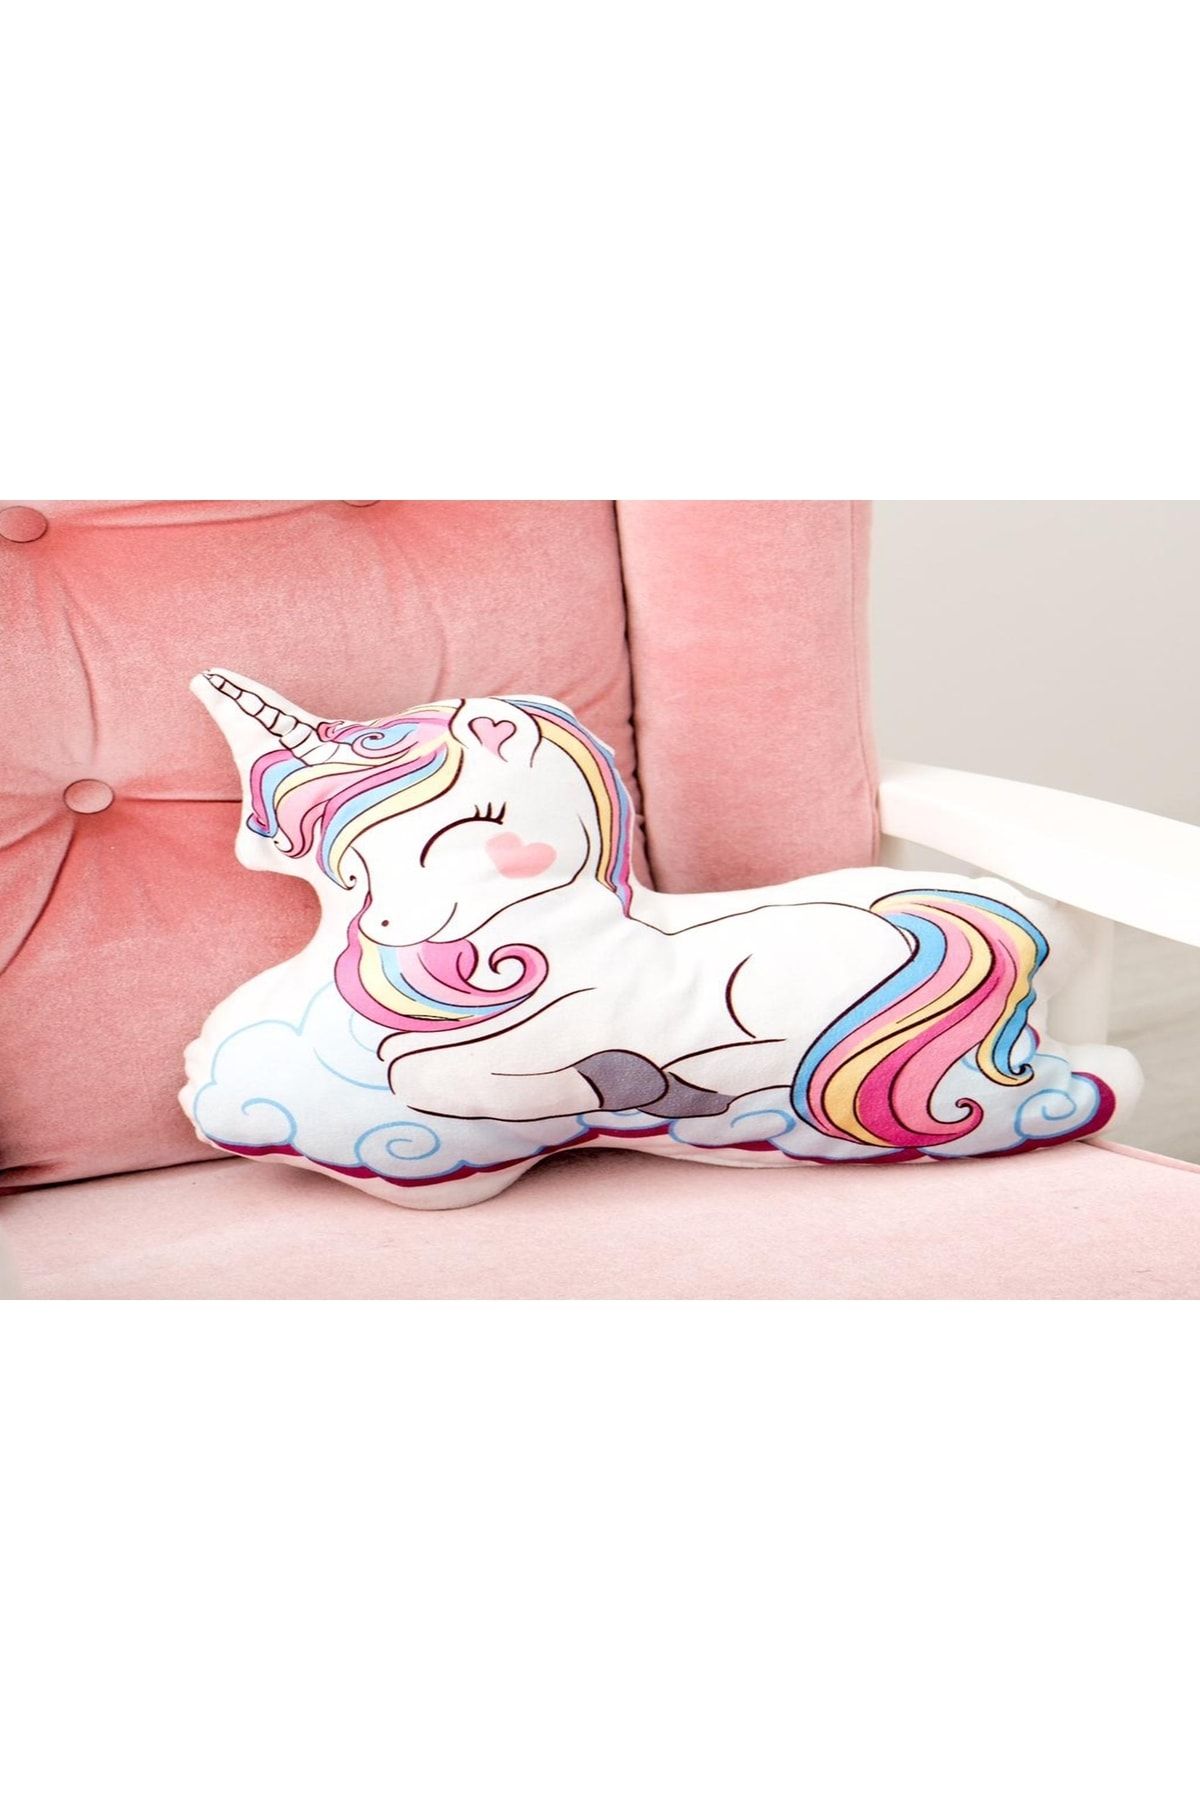 instababyrooms Gökkuşağı Unicorn Desenli Uyku Arkadaşı Dijital Baskılı Dekoratif Yastık